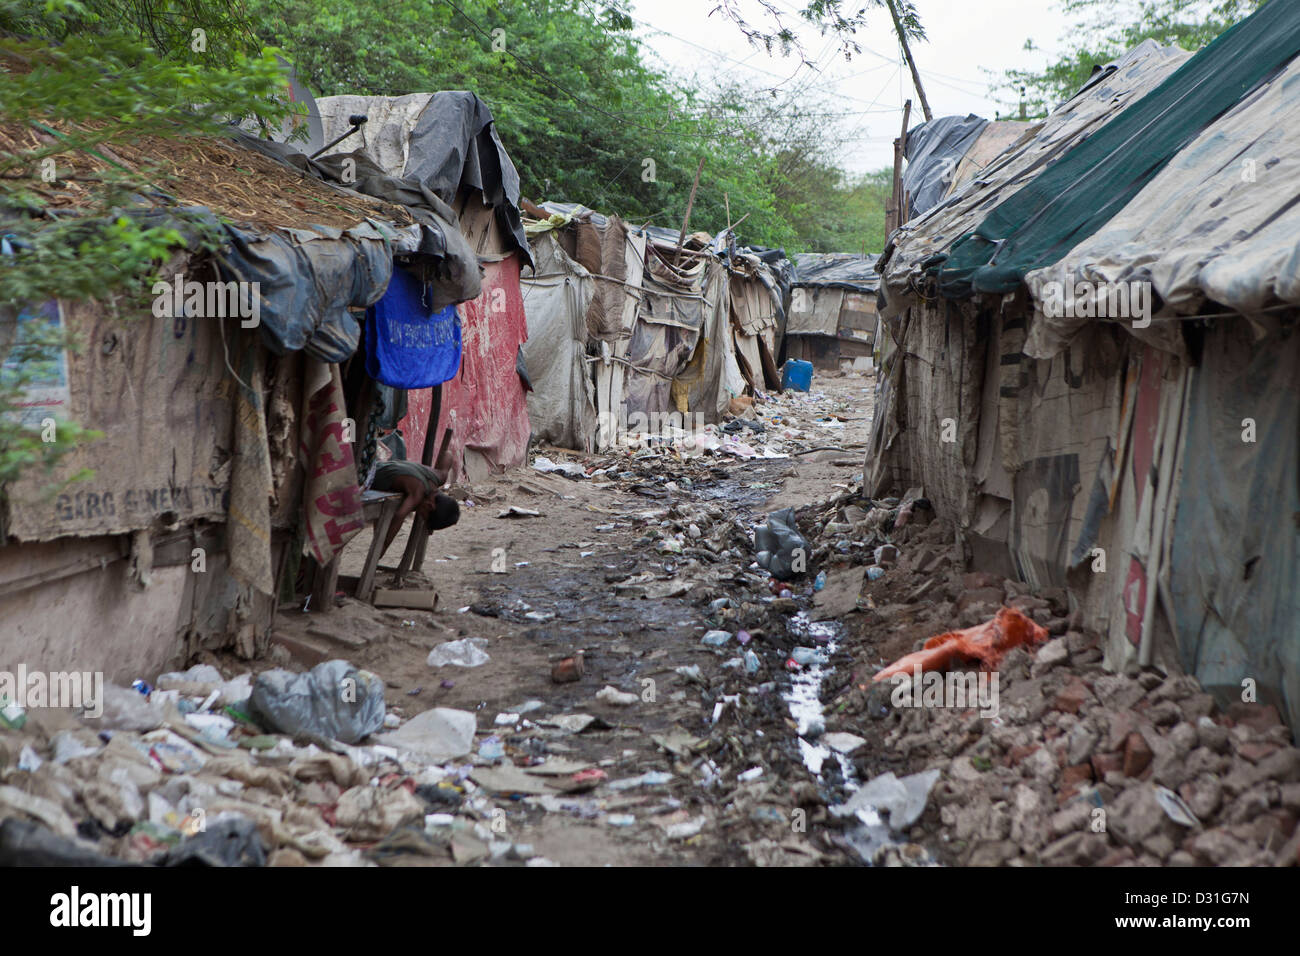 La pauvreté vivant dans Tehkhand Slum, Delhi, Inde. Maison sur s lane avec des installations sanitaires et d'égout à ciel ouvert. Banque D'Images